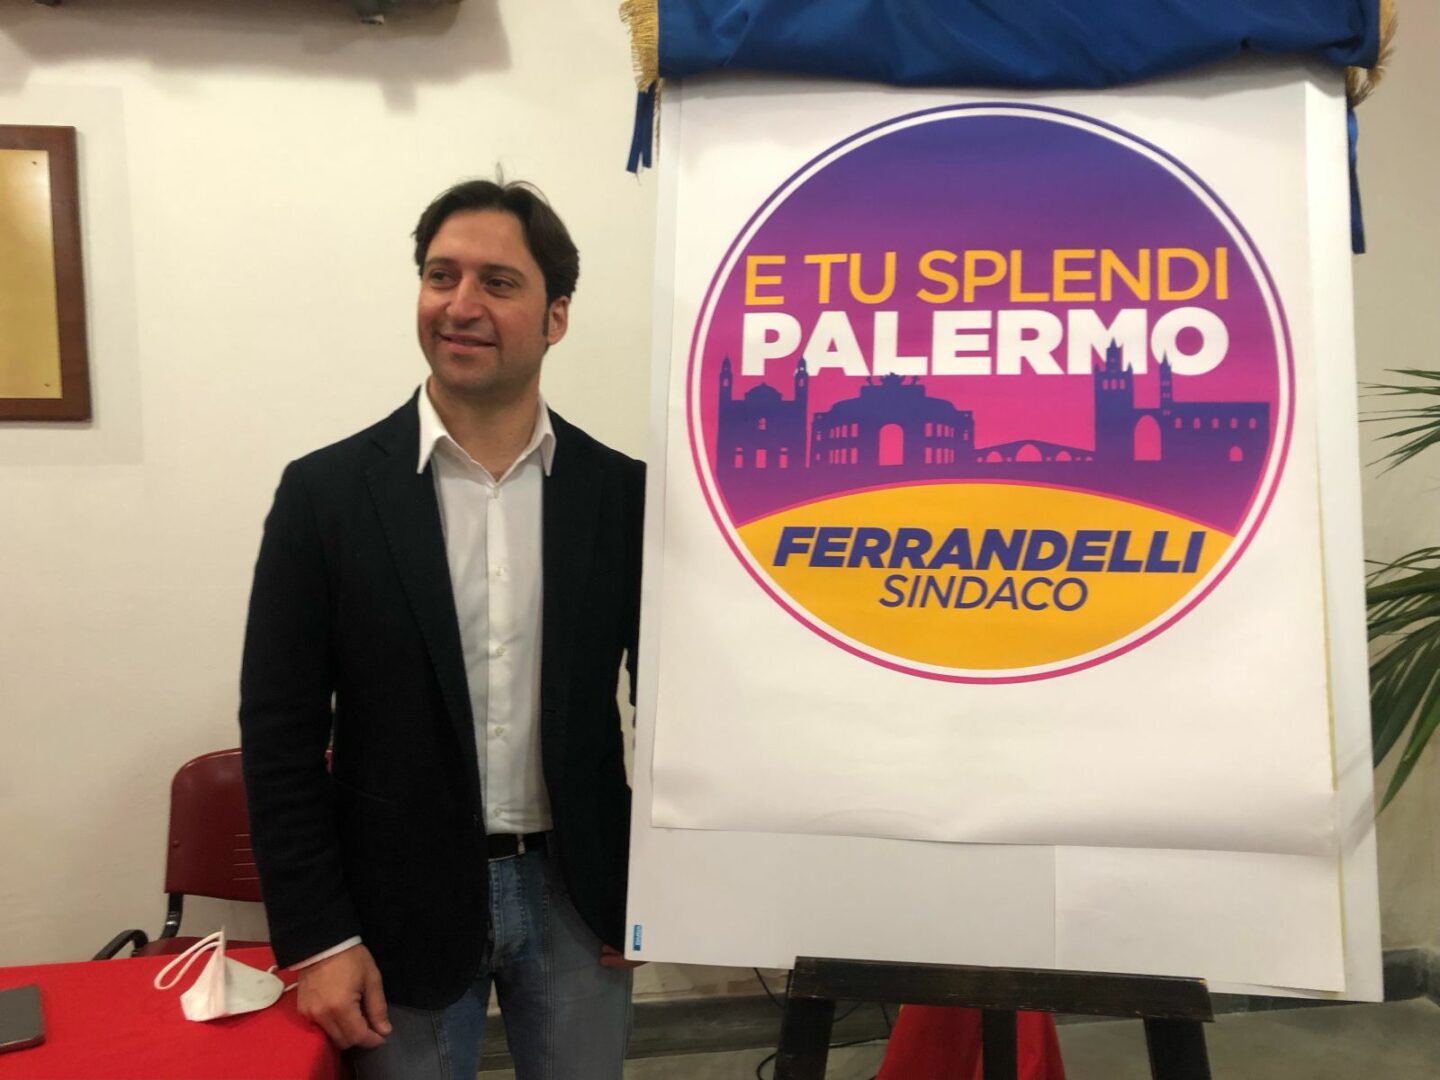 Elezioni Palermo, Ferrandelli: “La Lega ha sputato sulla nostra storia”